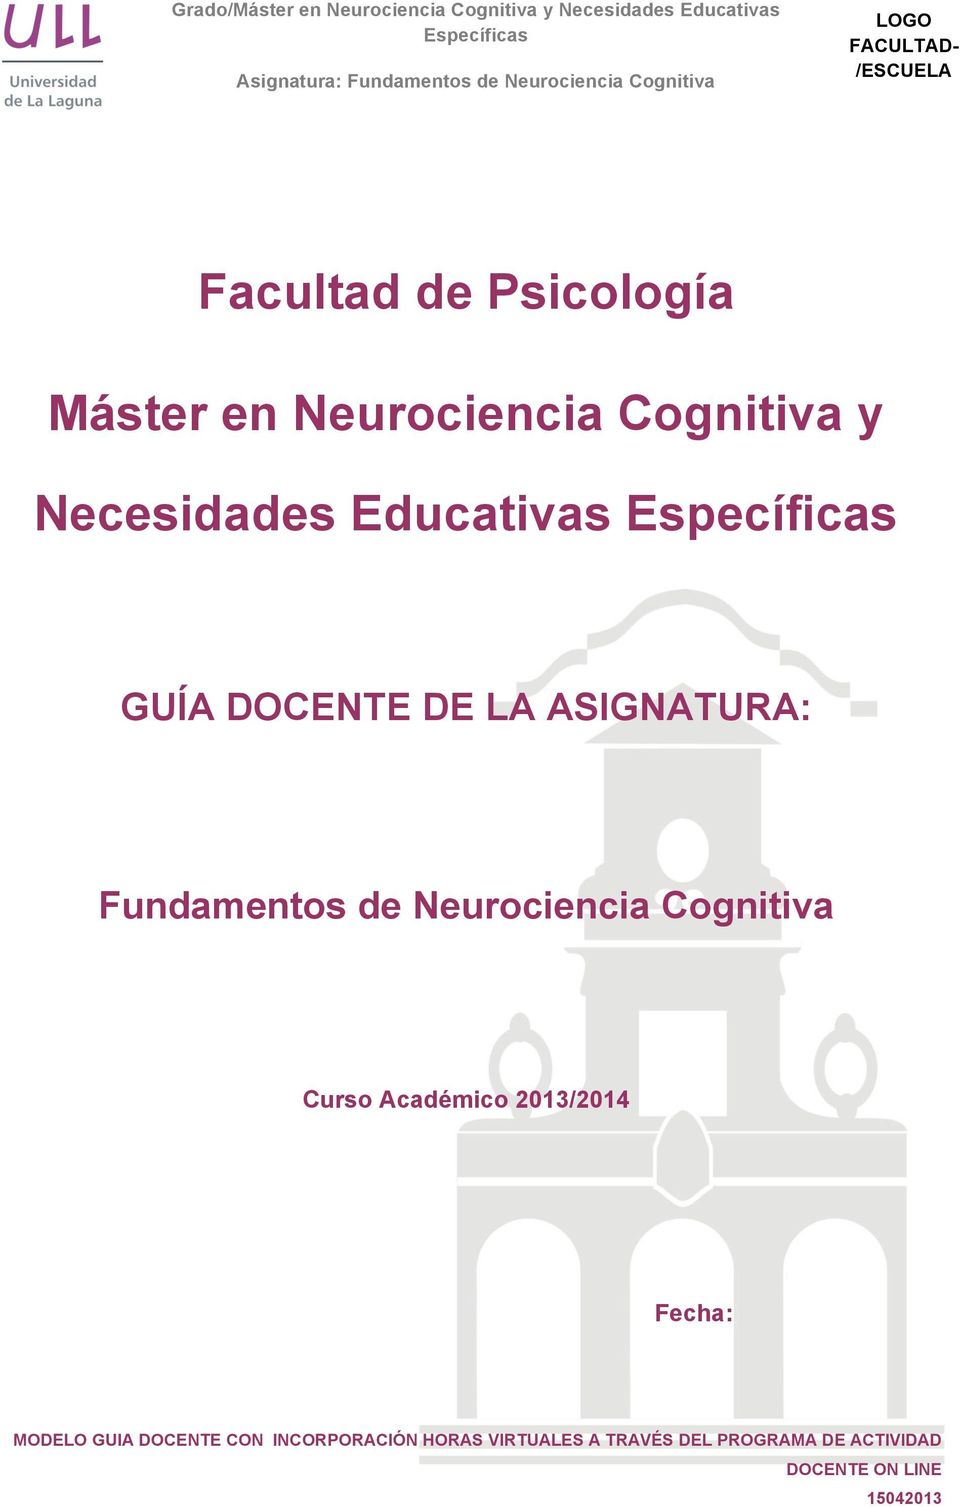 Neurociencia Cognitiva Curso Académico 2013/2014 Fecha: MODELO GUIA DOCENTE